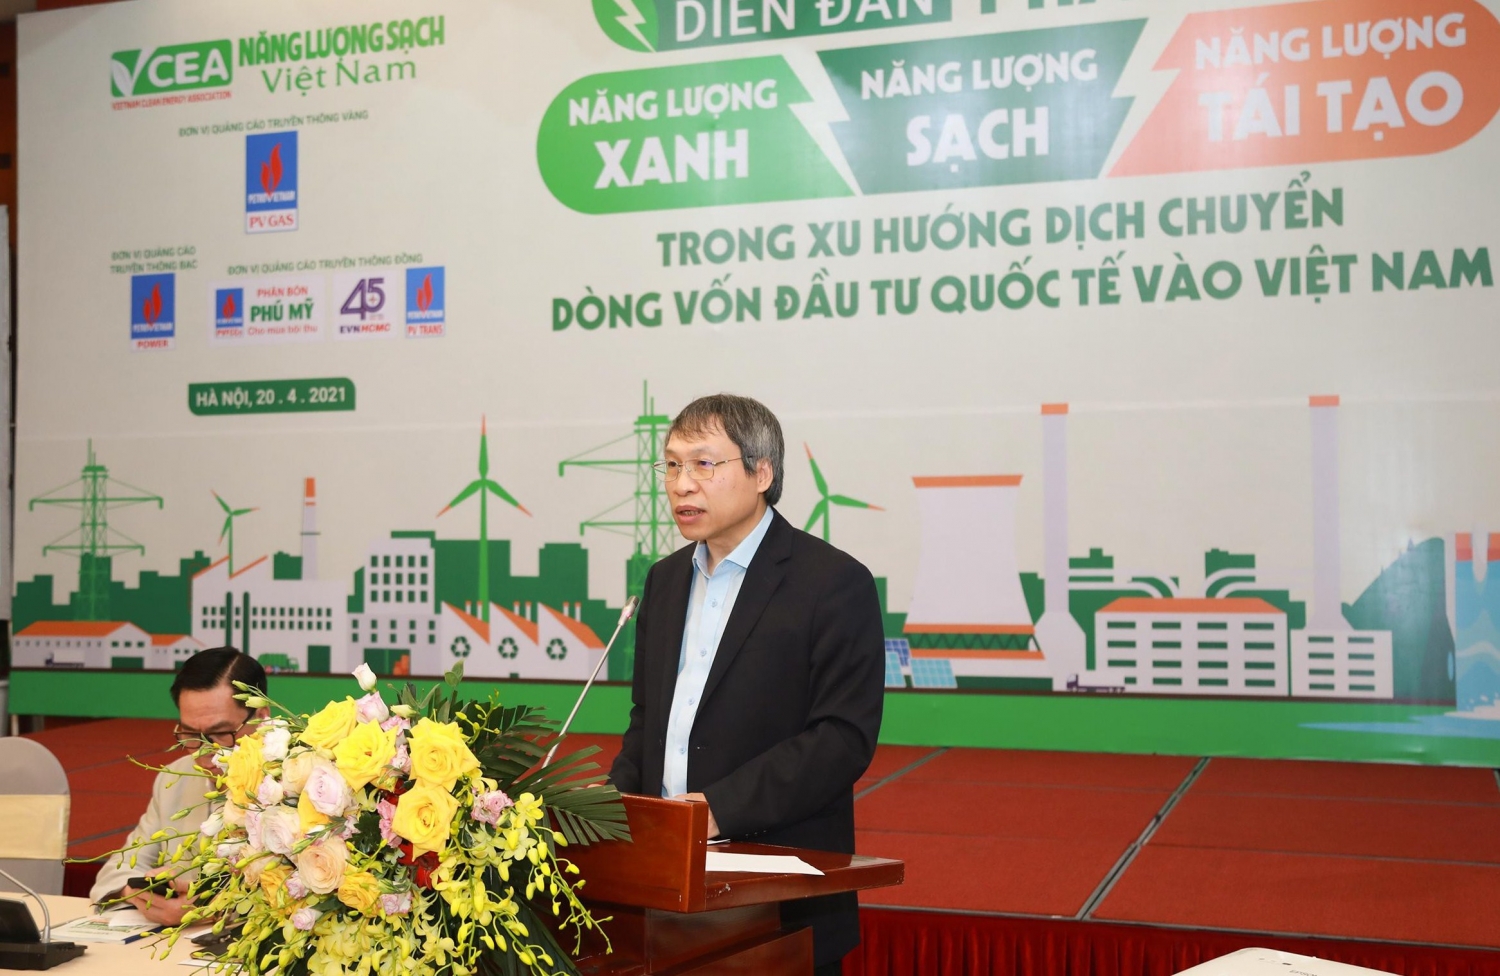 Đẩy mạnh phát triển năng lượng sạch, tăng trưởng xanh ở Việt Nam